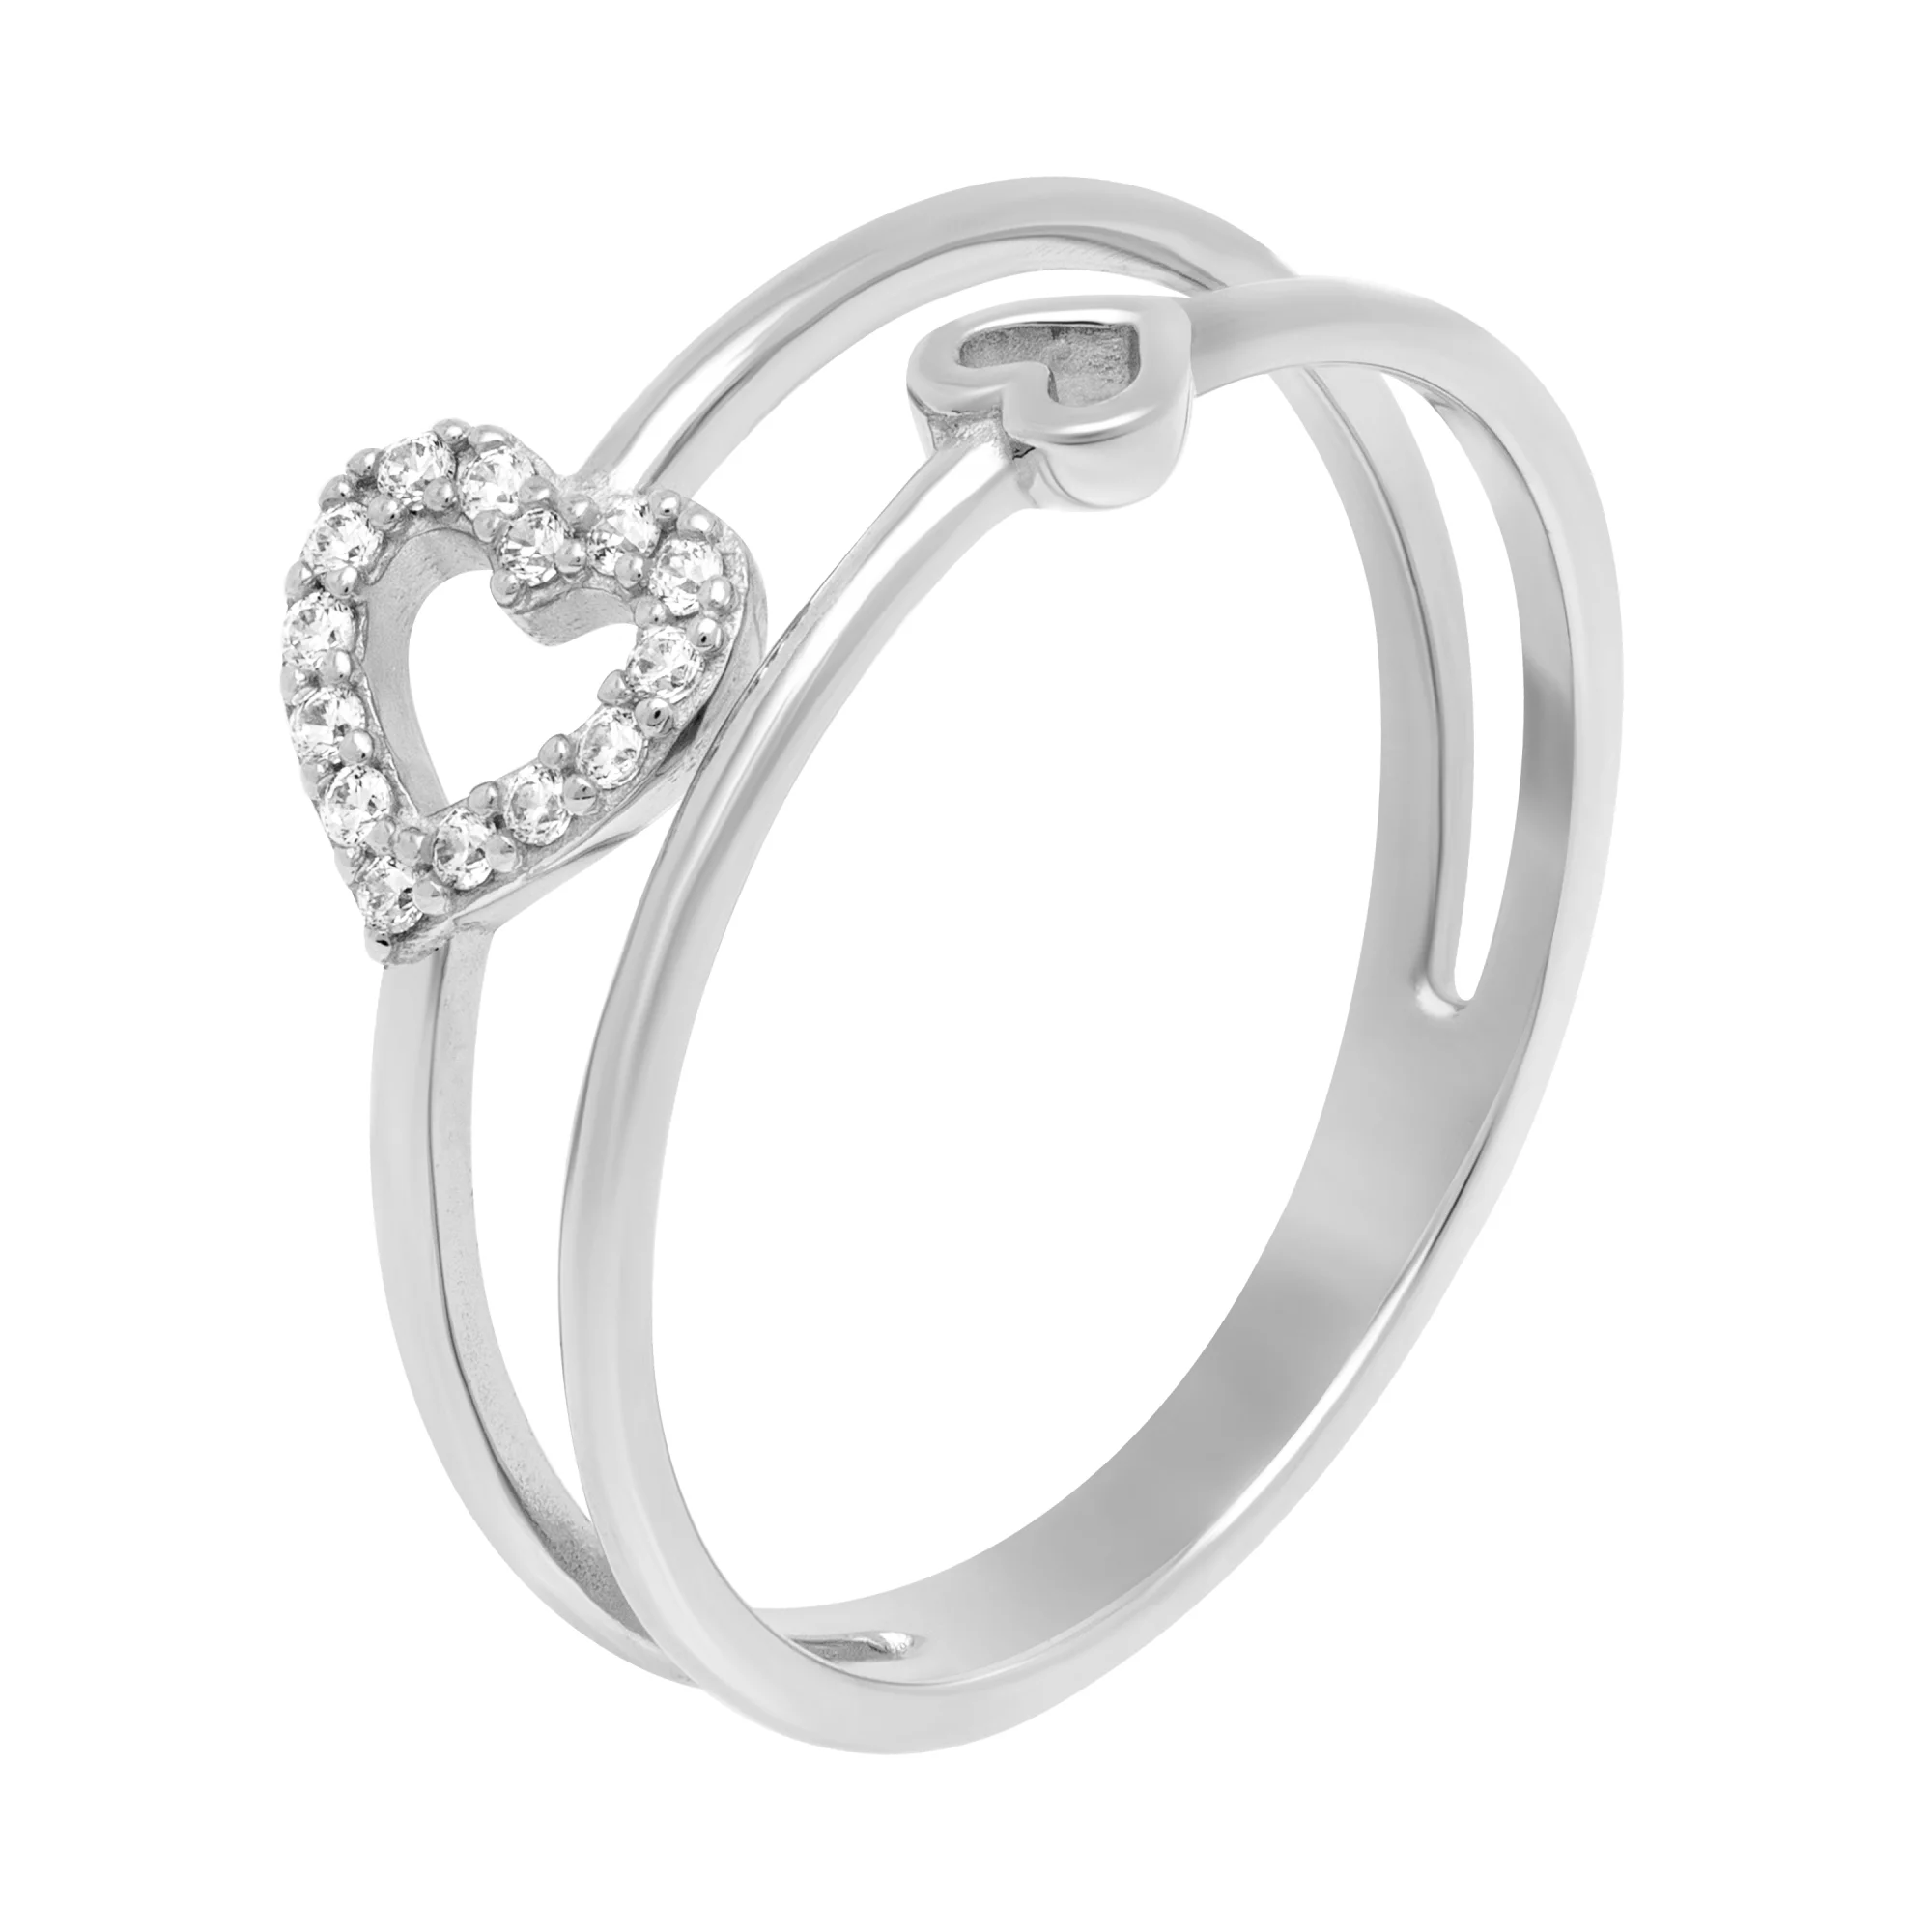 Двойное золотое кольцо с сердечками и фианитами - 1706749 – изображение 1